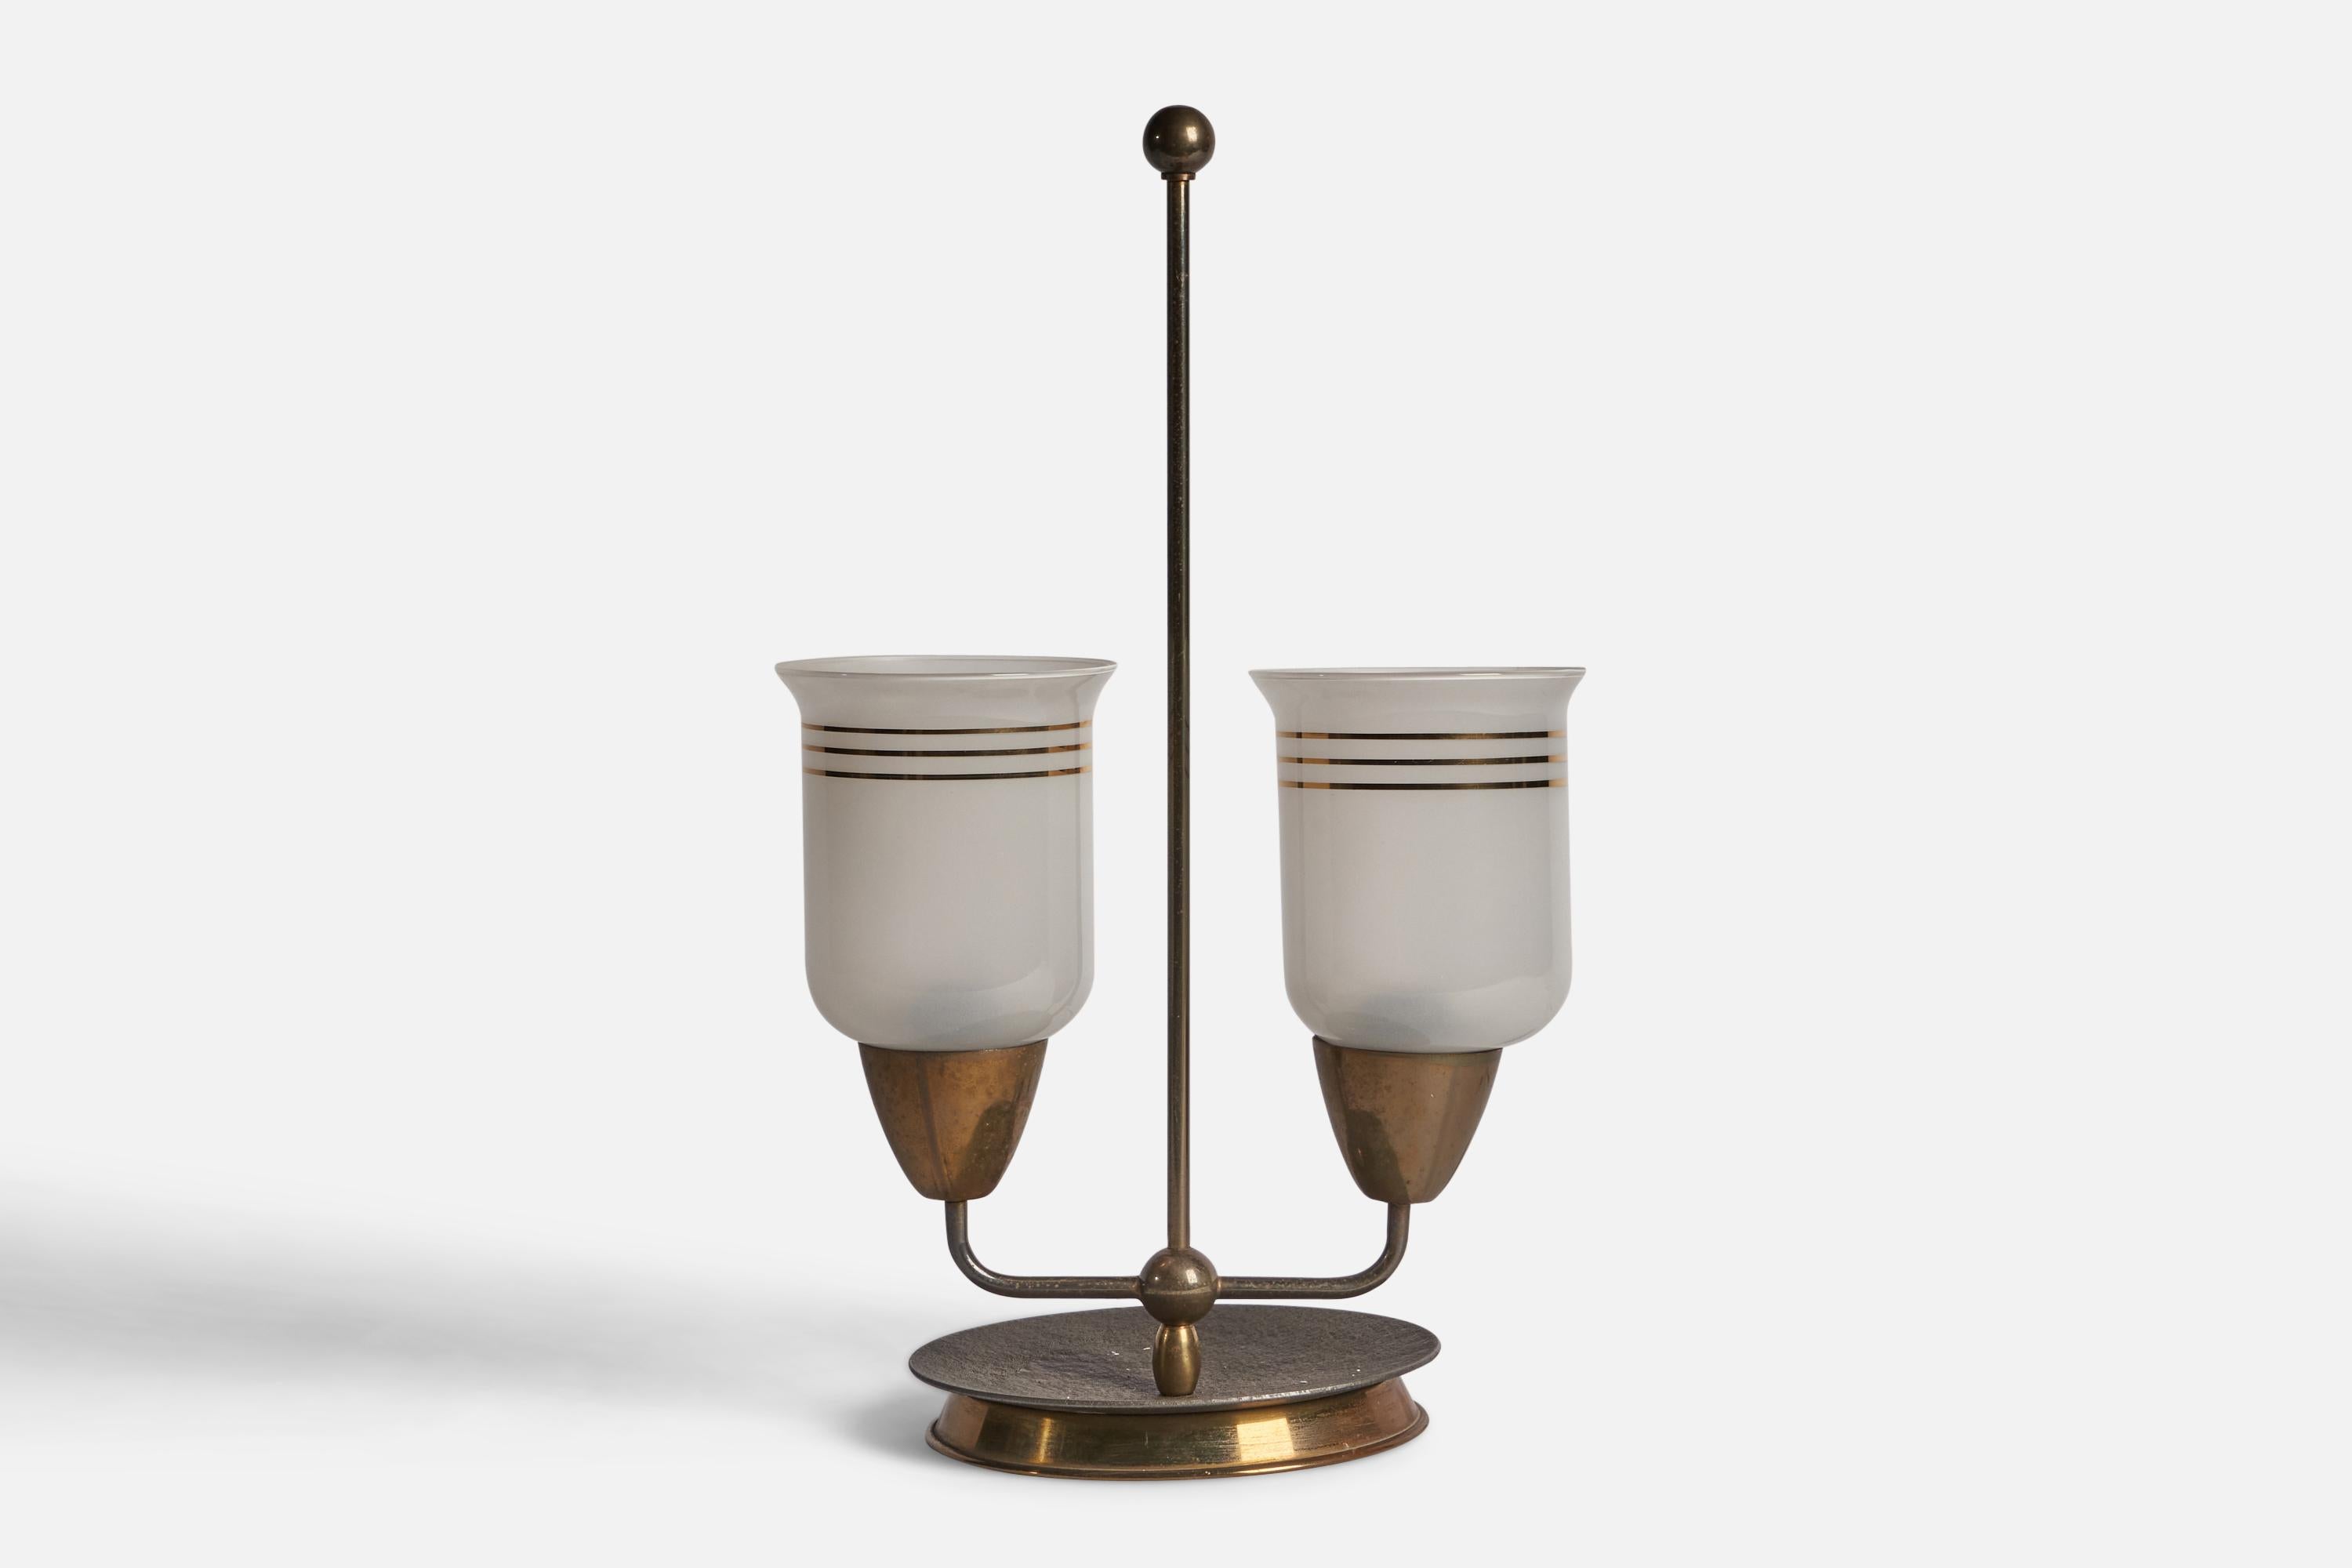 
Lampe de table à deux bras en laiton et verre opalin doré, conçue et produite en Italie, vers les années 1940.
Dimensions globales (pouces) : 17.75